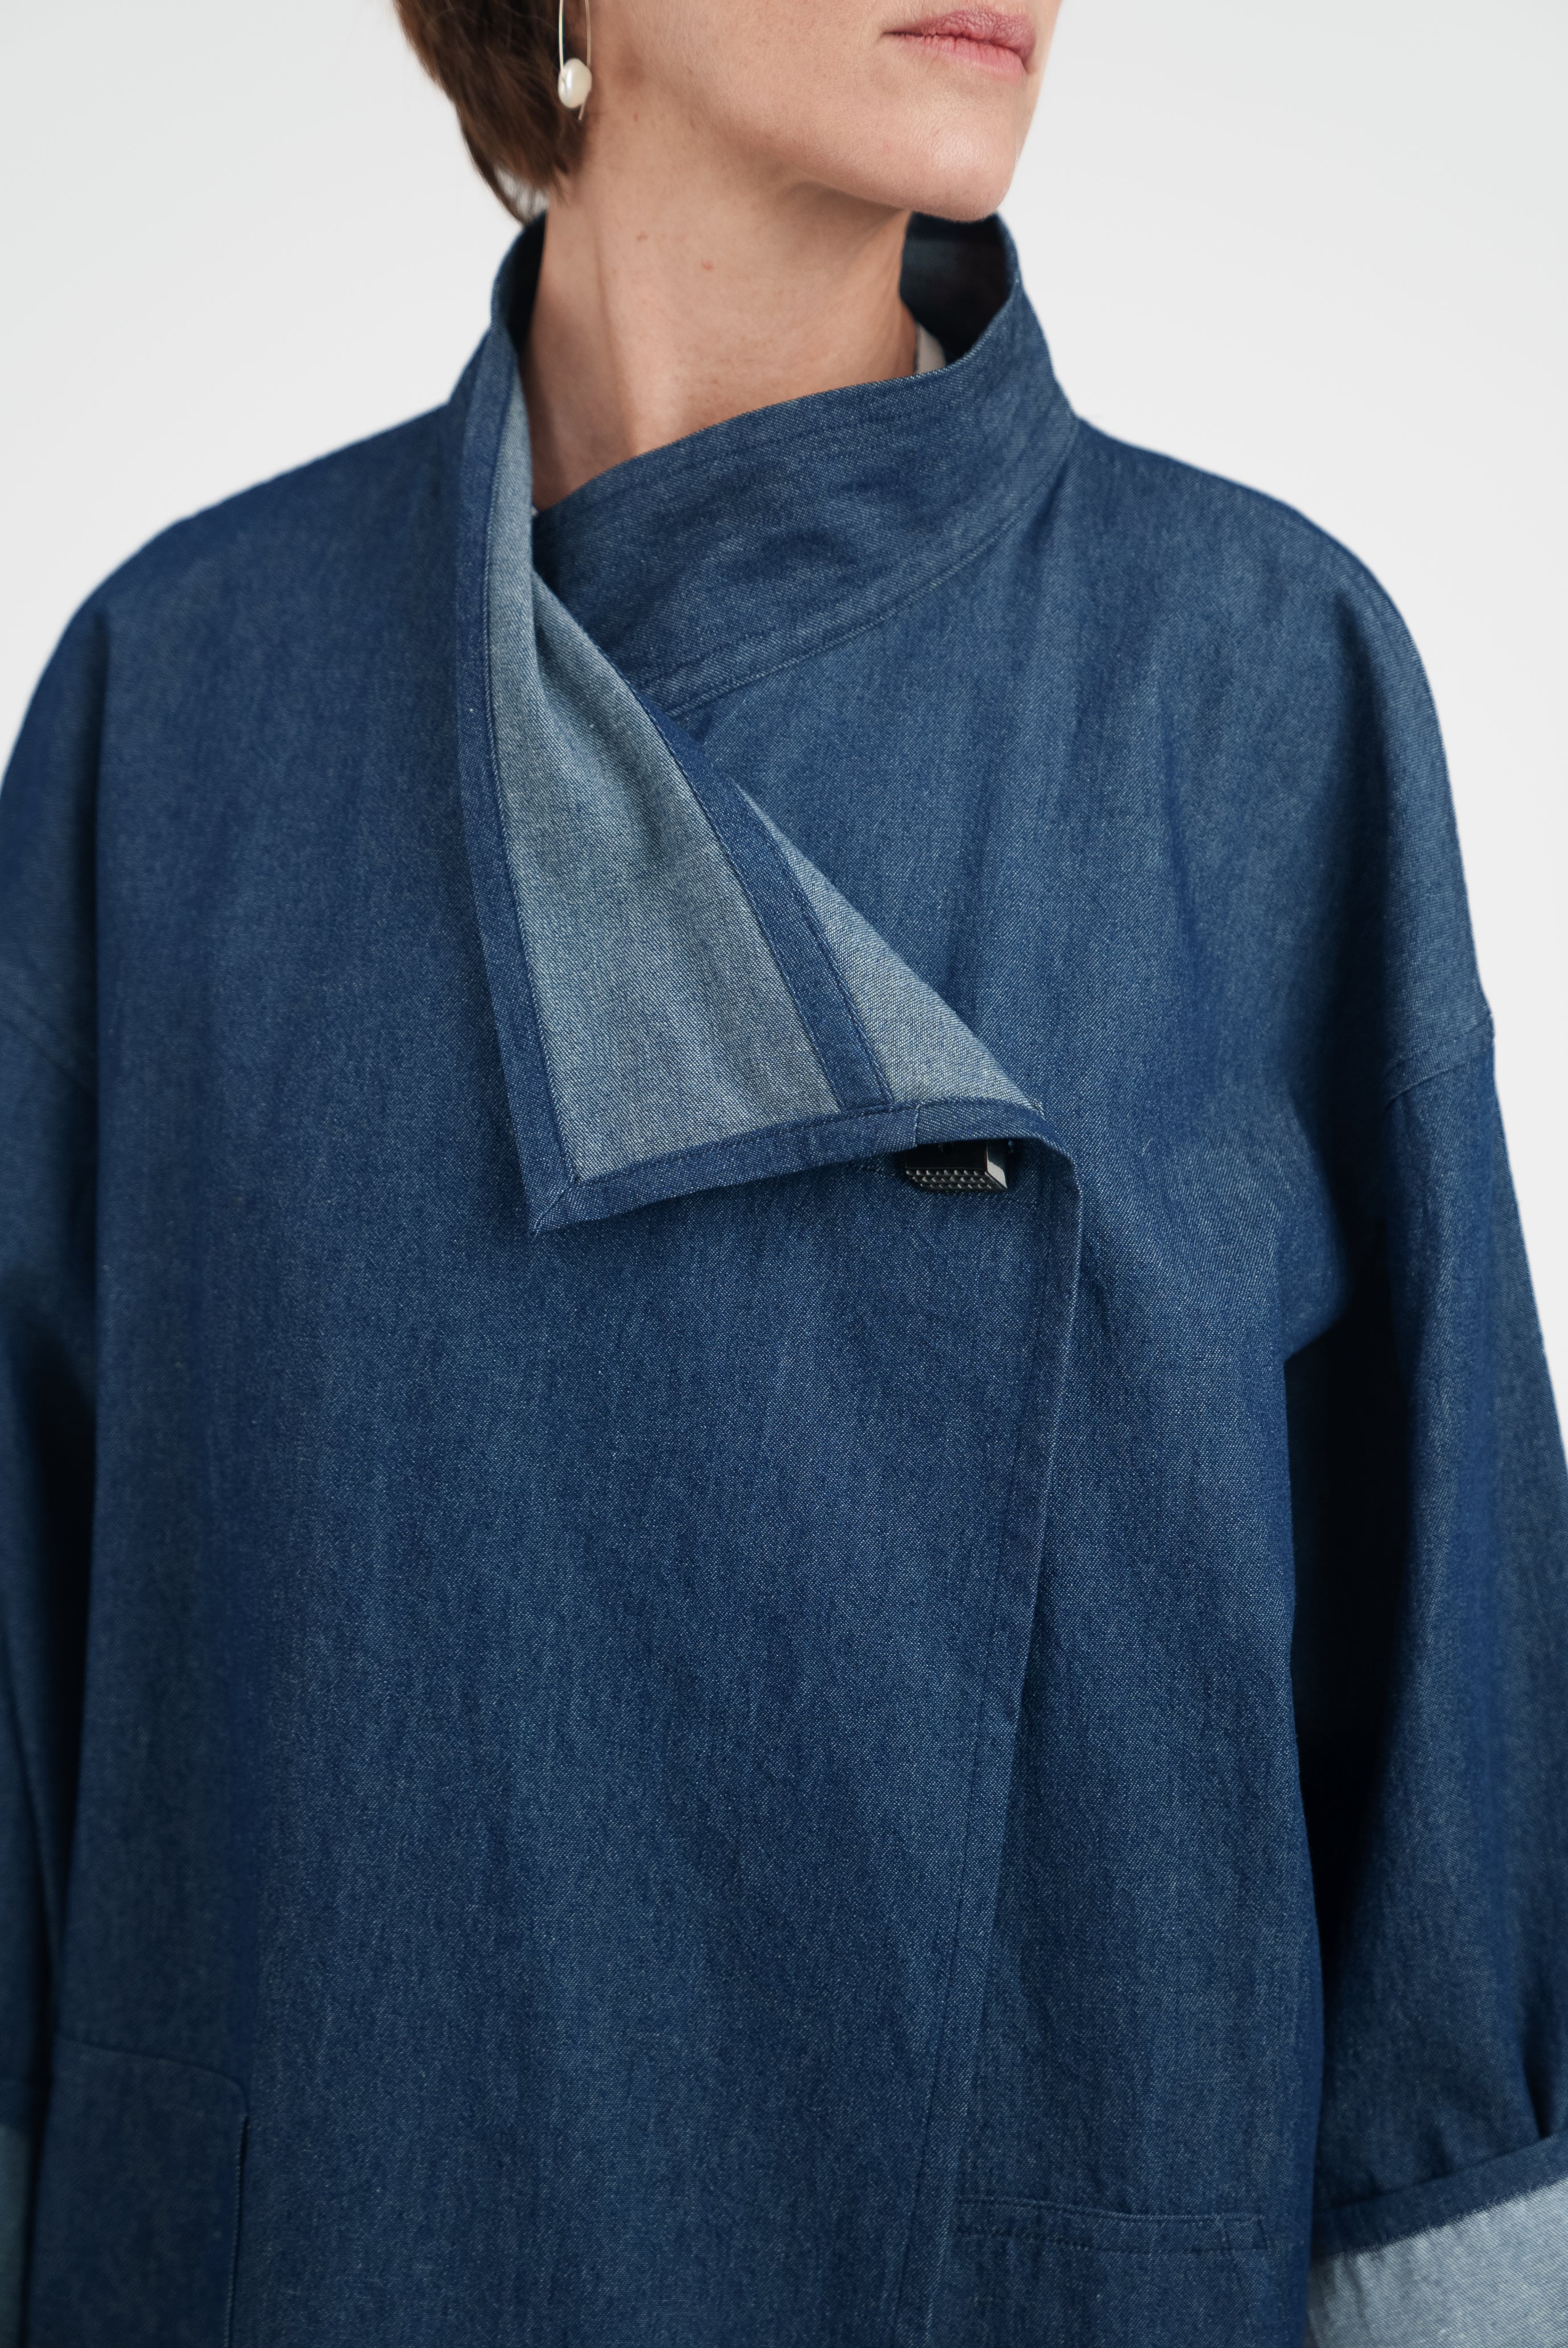 Chinese Coat in Indigo Cotton Denim